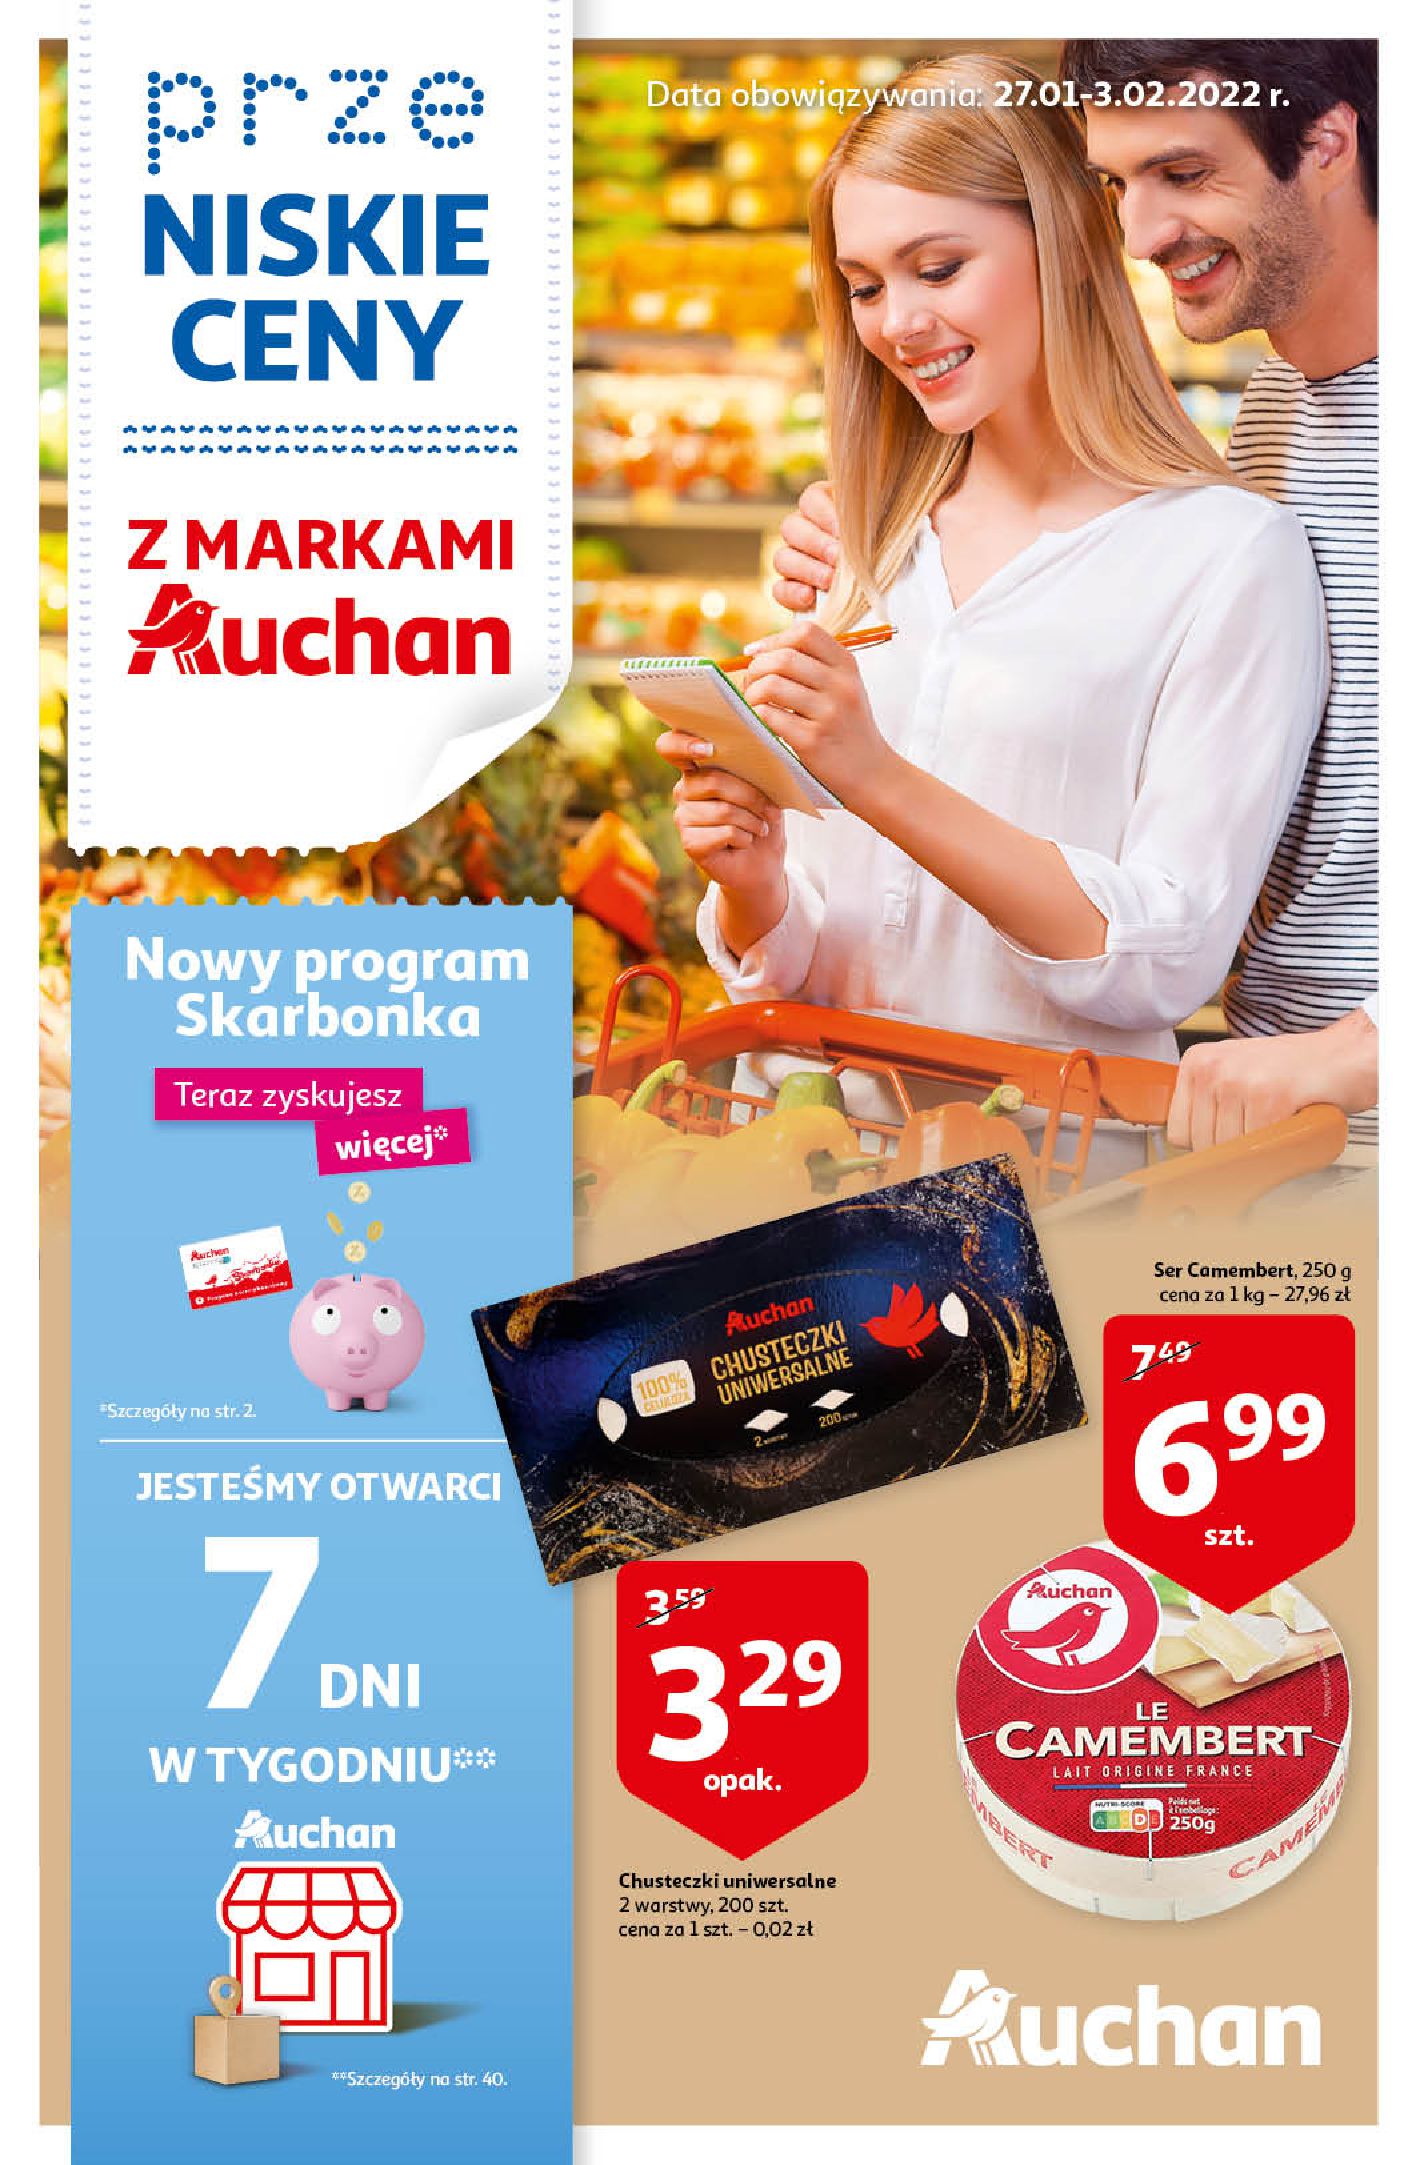 Auchan:  Gazetka Auchan - przeNISKIE CENY z markami Auchan 26.01.2022